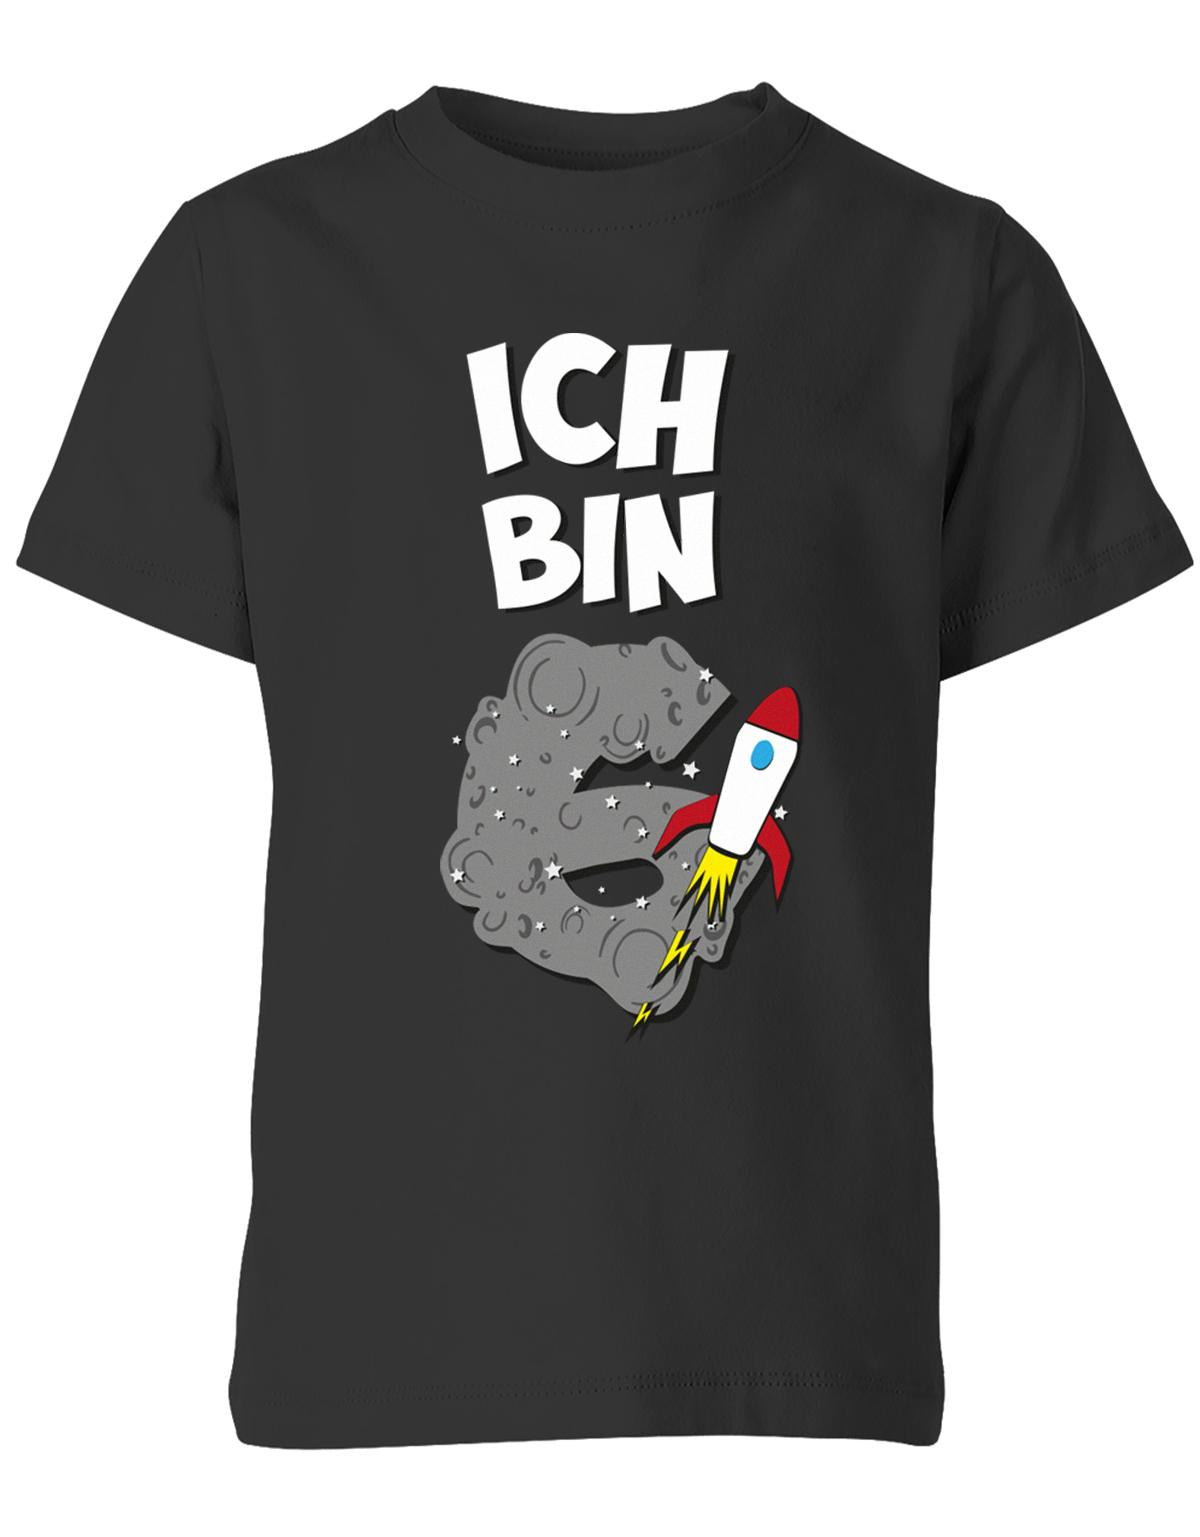 ich-bin-6-weltraum-rakete-planet-geburtstag-kinder-shirt-schwarz